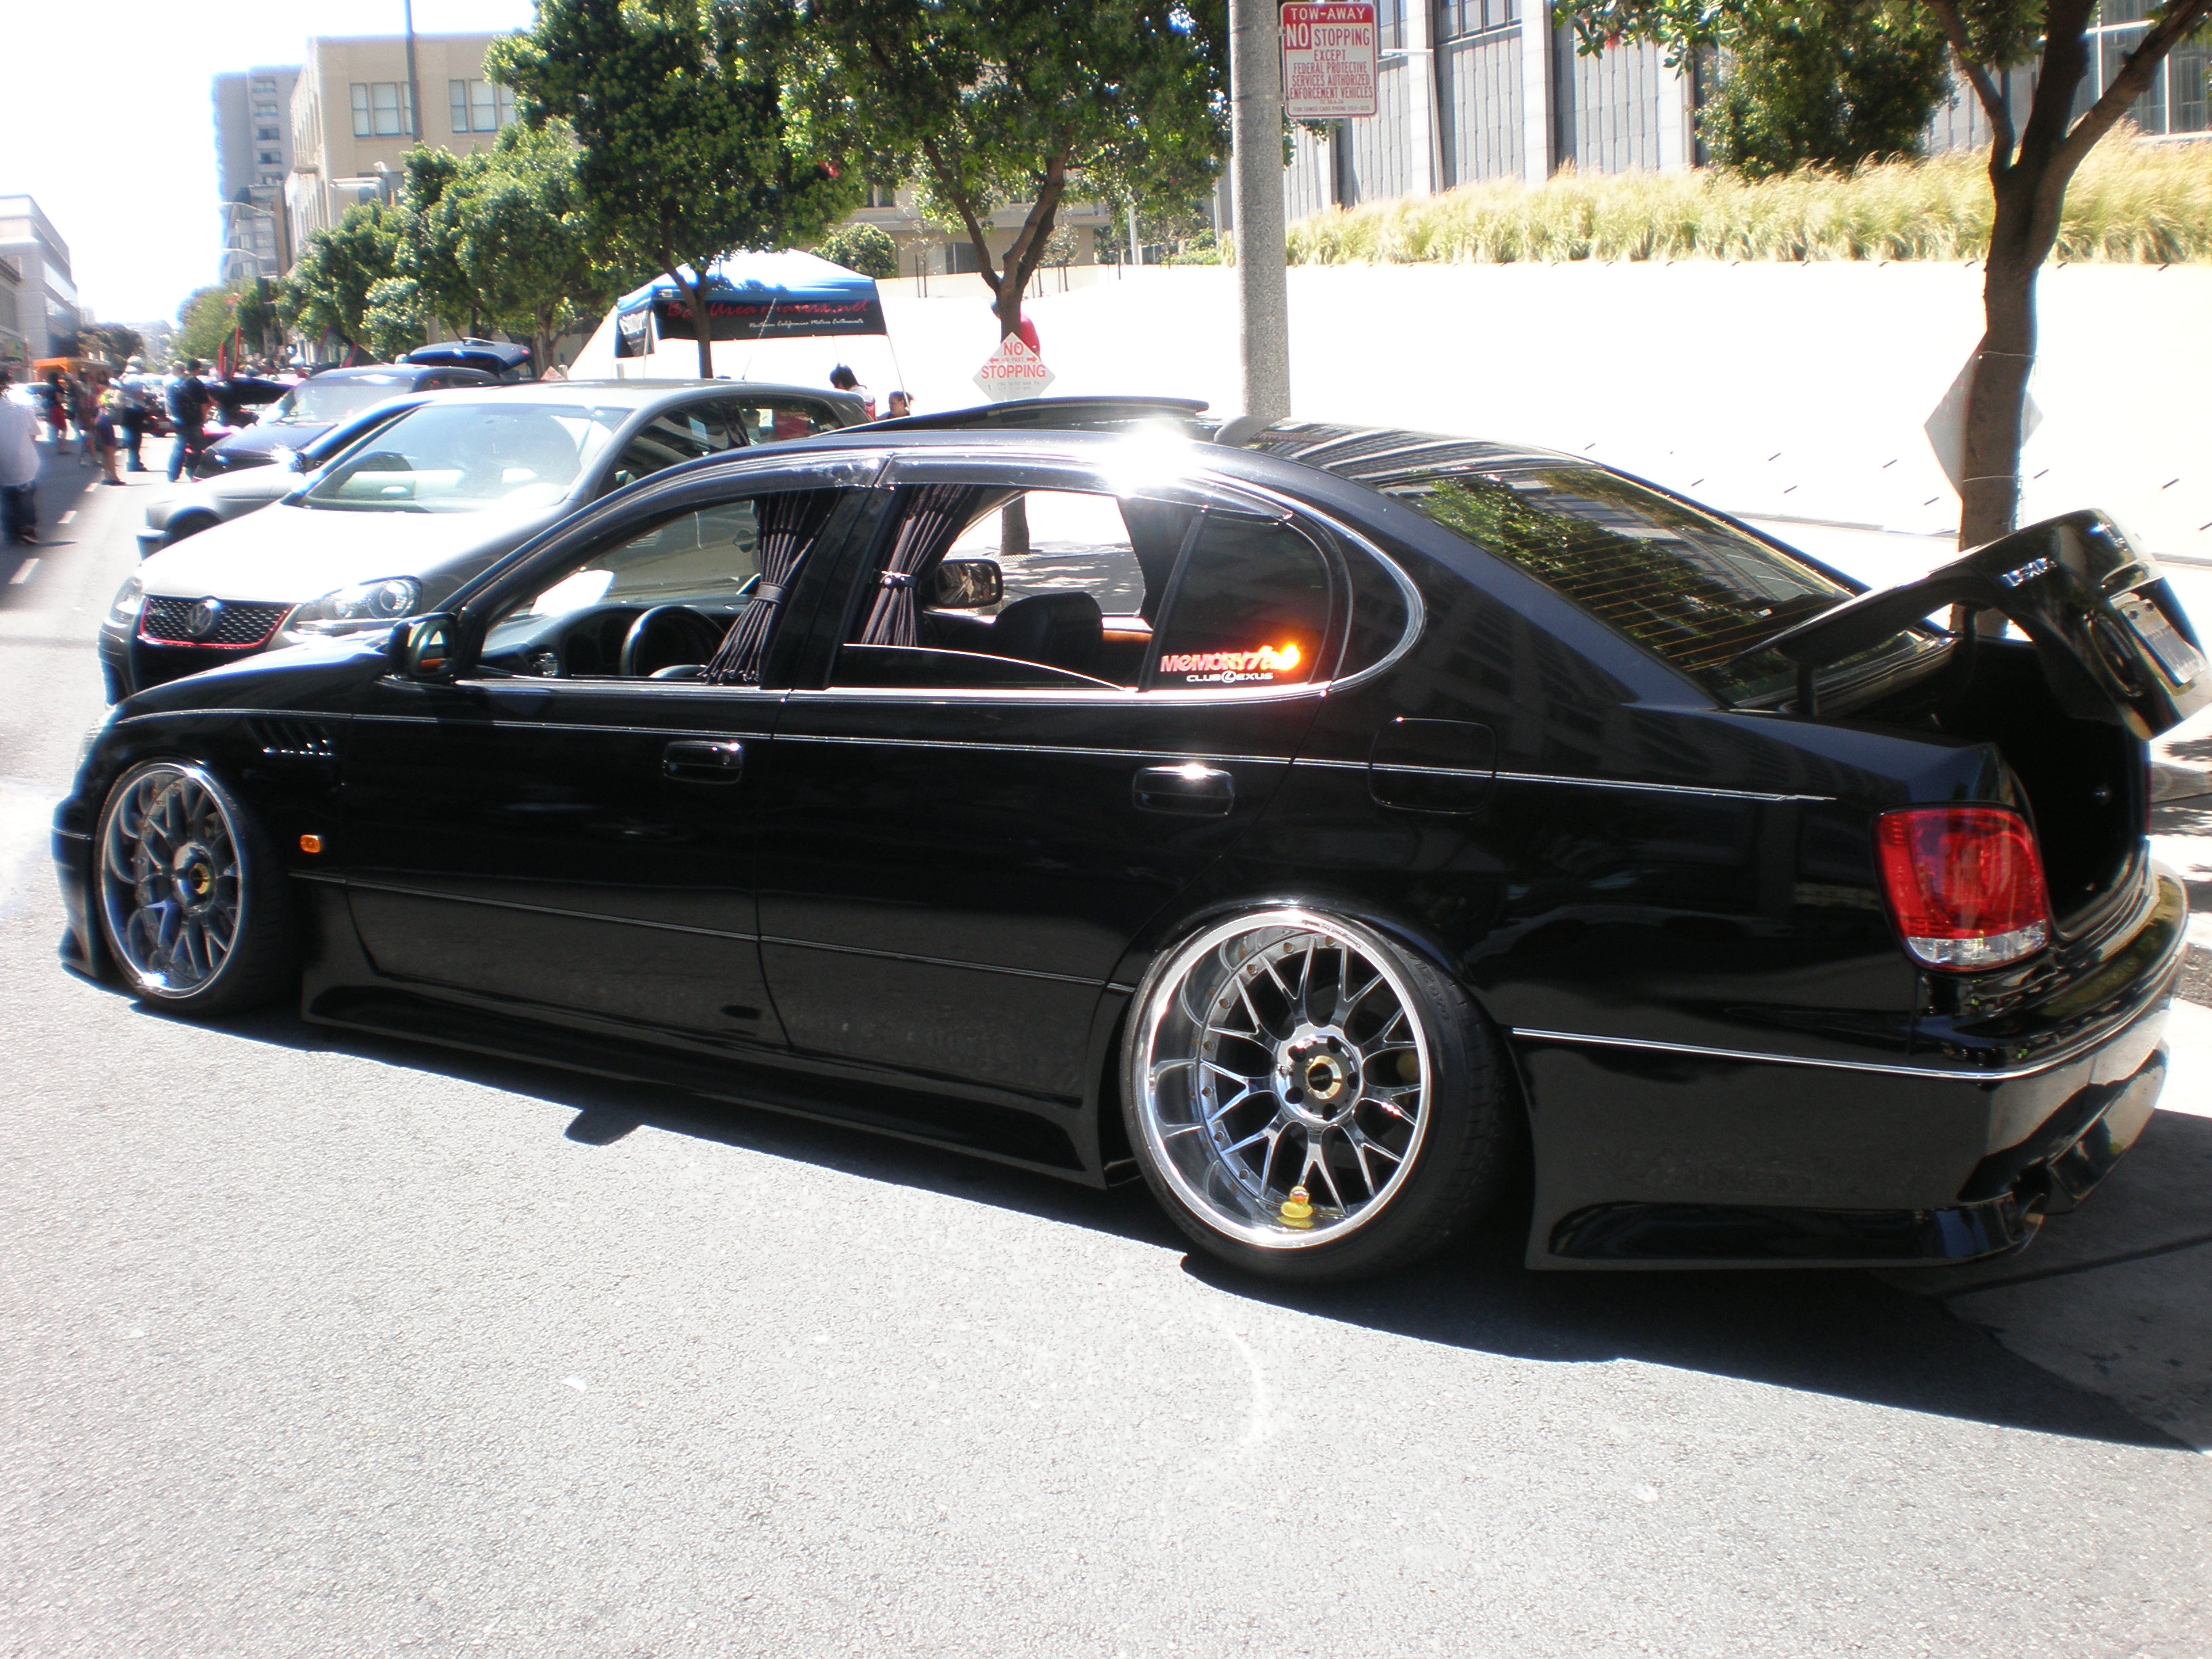 File:Modified black Lexus GS 400 side.JPG - Wikimedia Commons